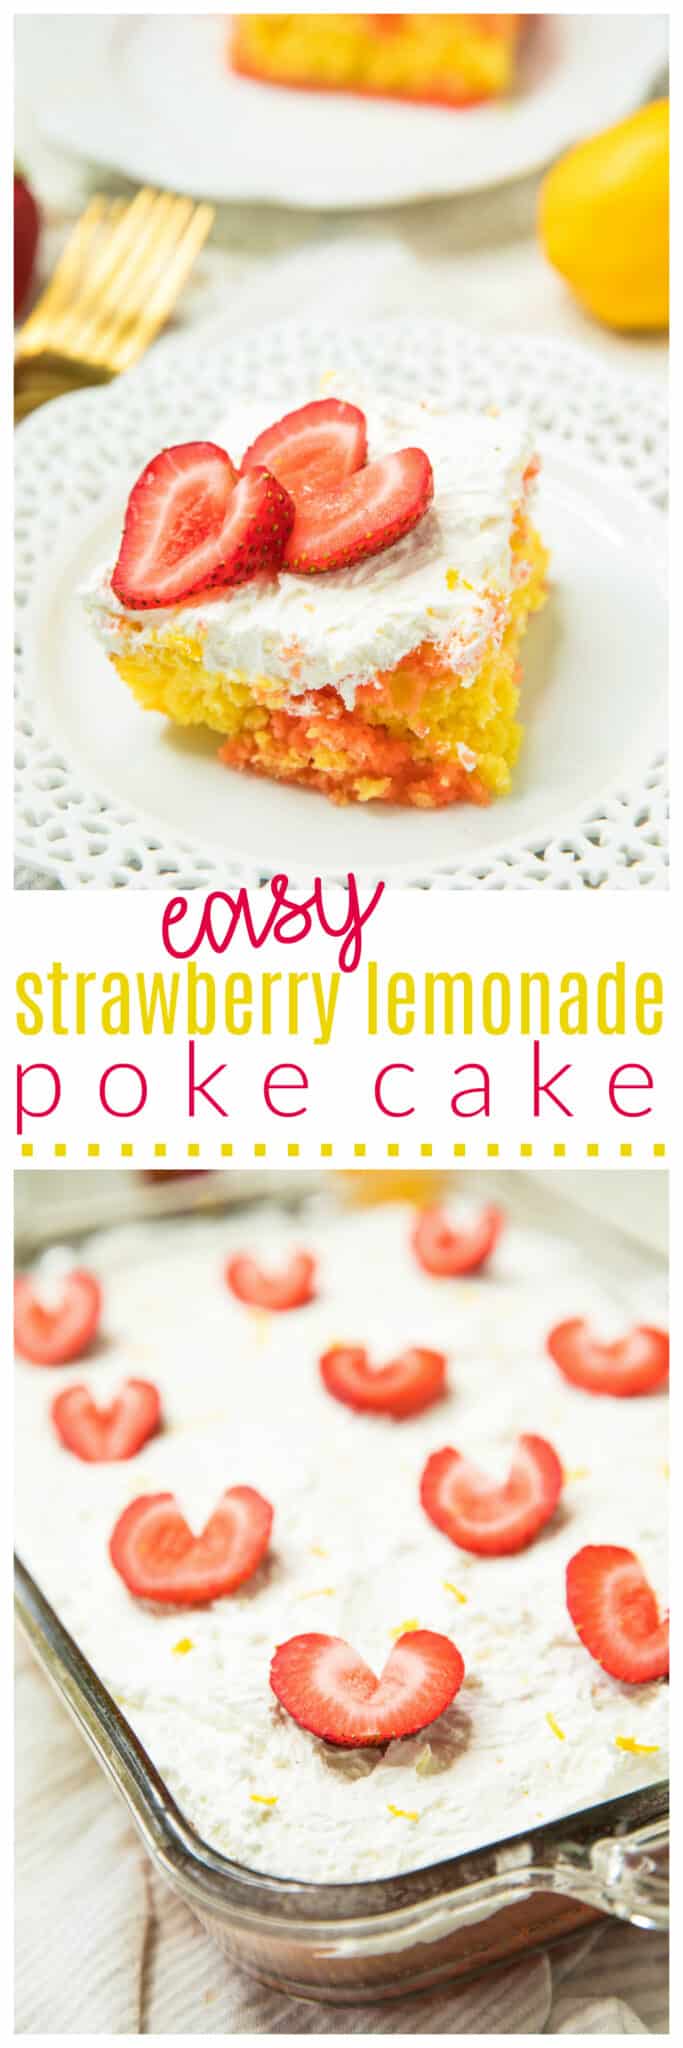 Pinterest image for Easy Strawberry Lemonade Poke Cake